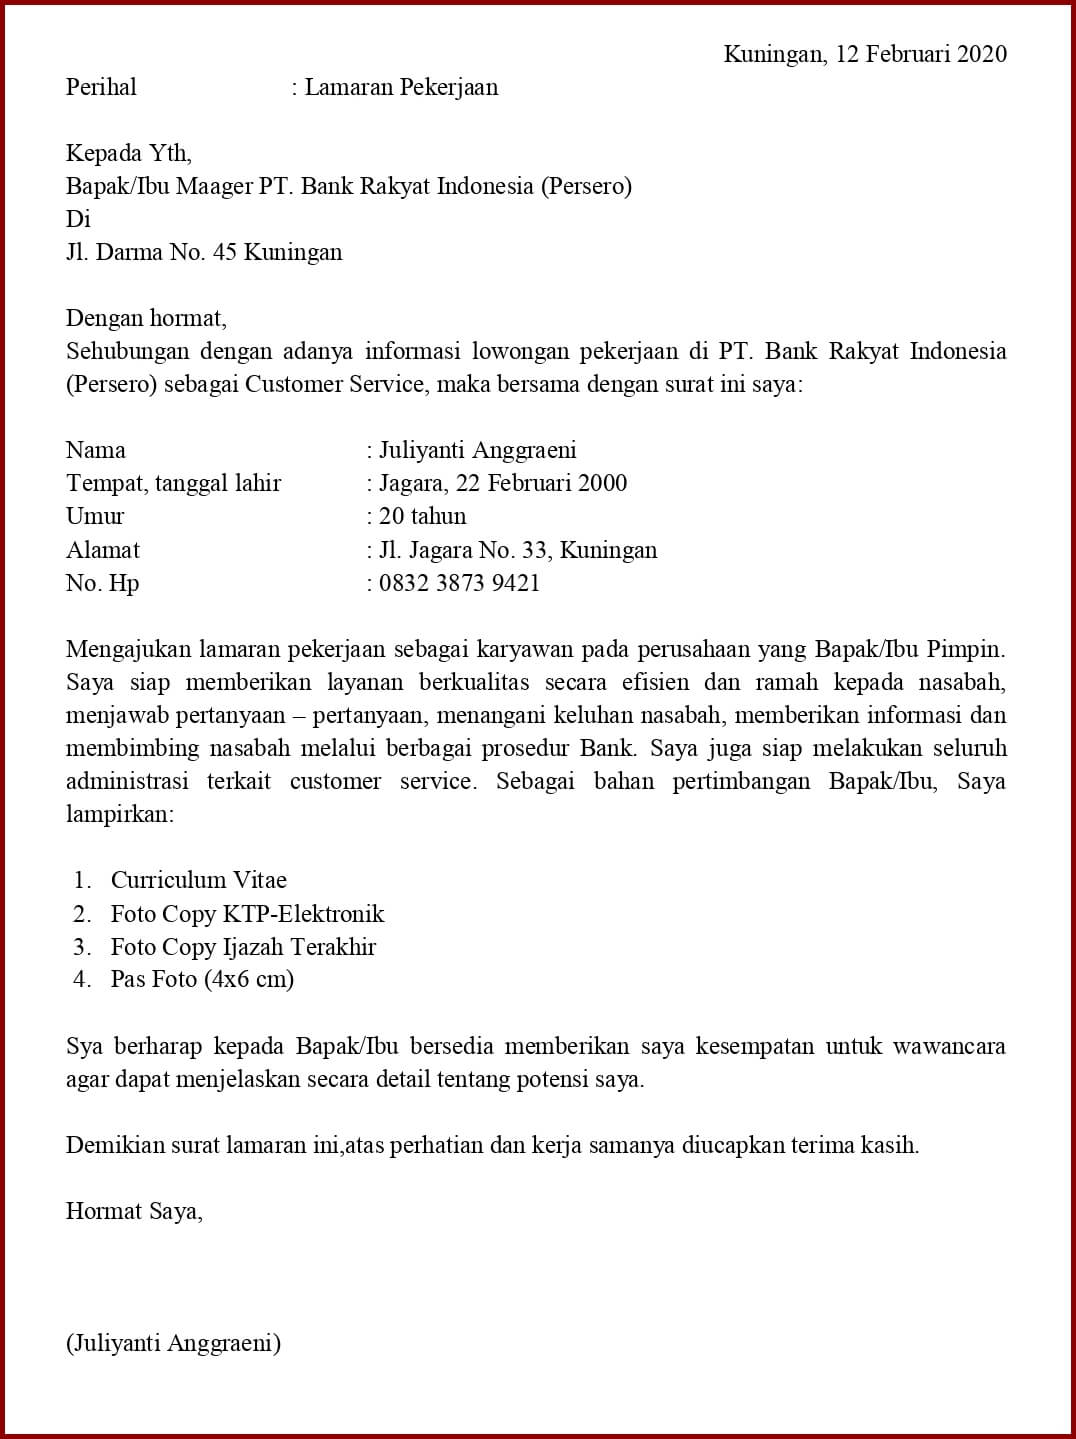 Contoh Surat Lamaran Kerja Pt Bank Rakyat Indonesia » Daily Blog Networks